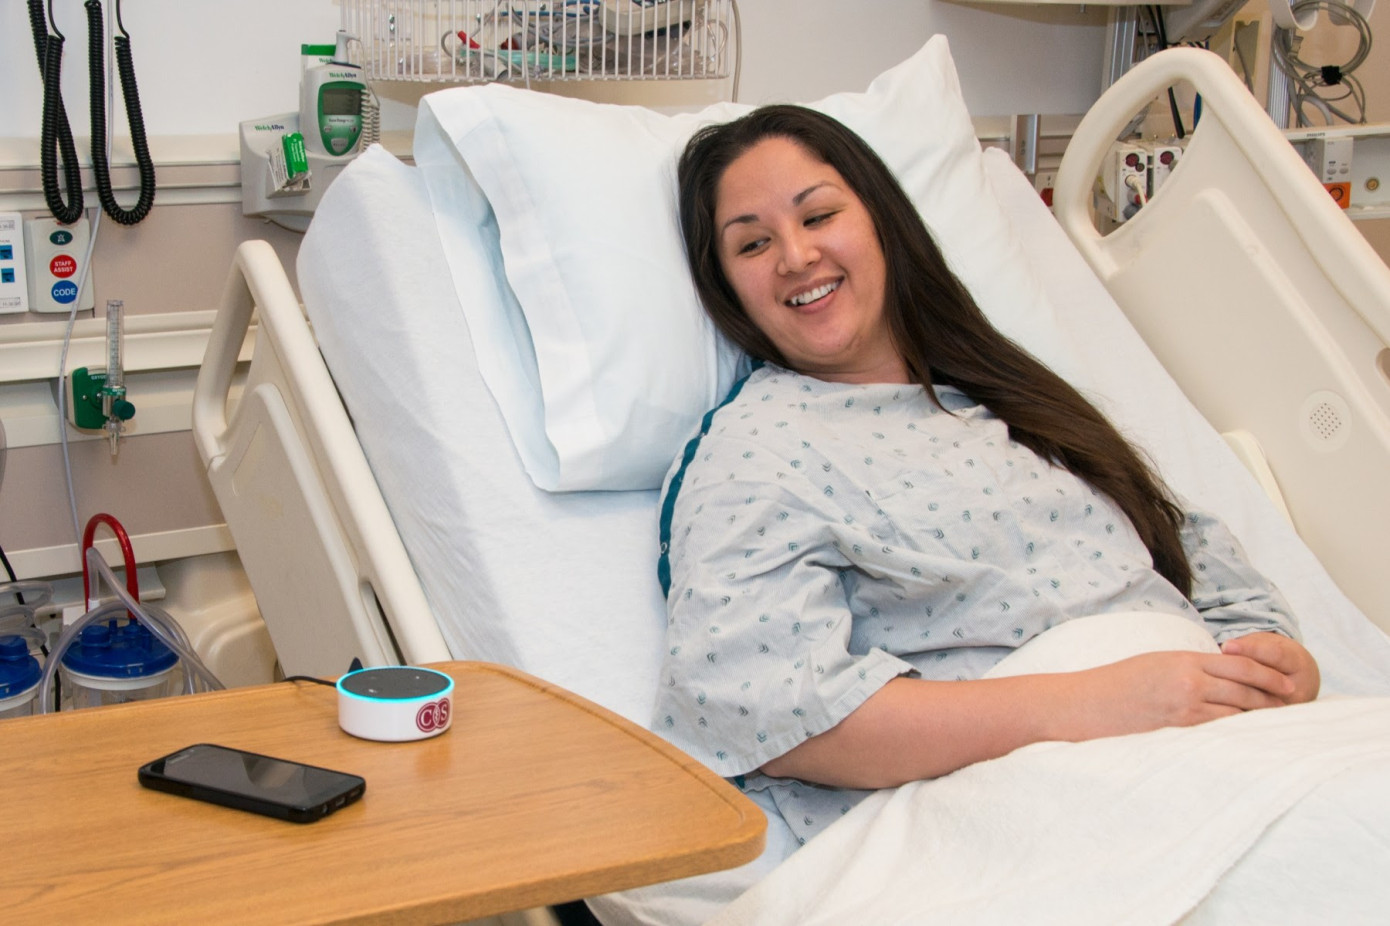 Cedars-Sinai Using Alexa in Smart Hospital Room Pilot Program